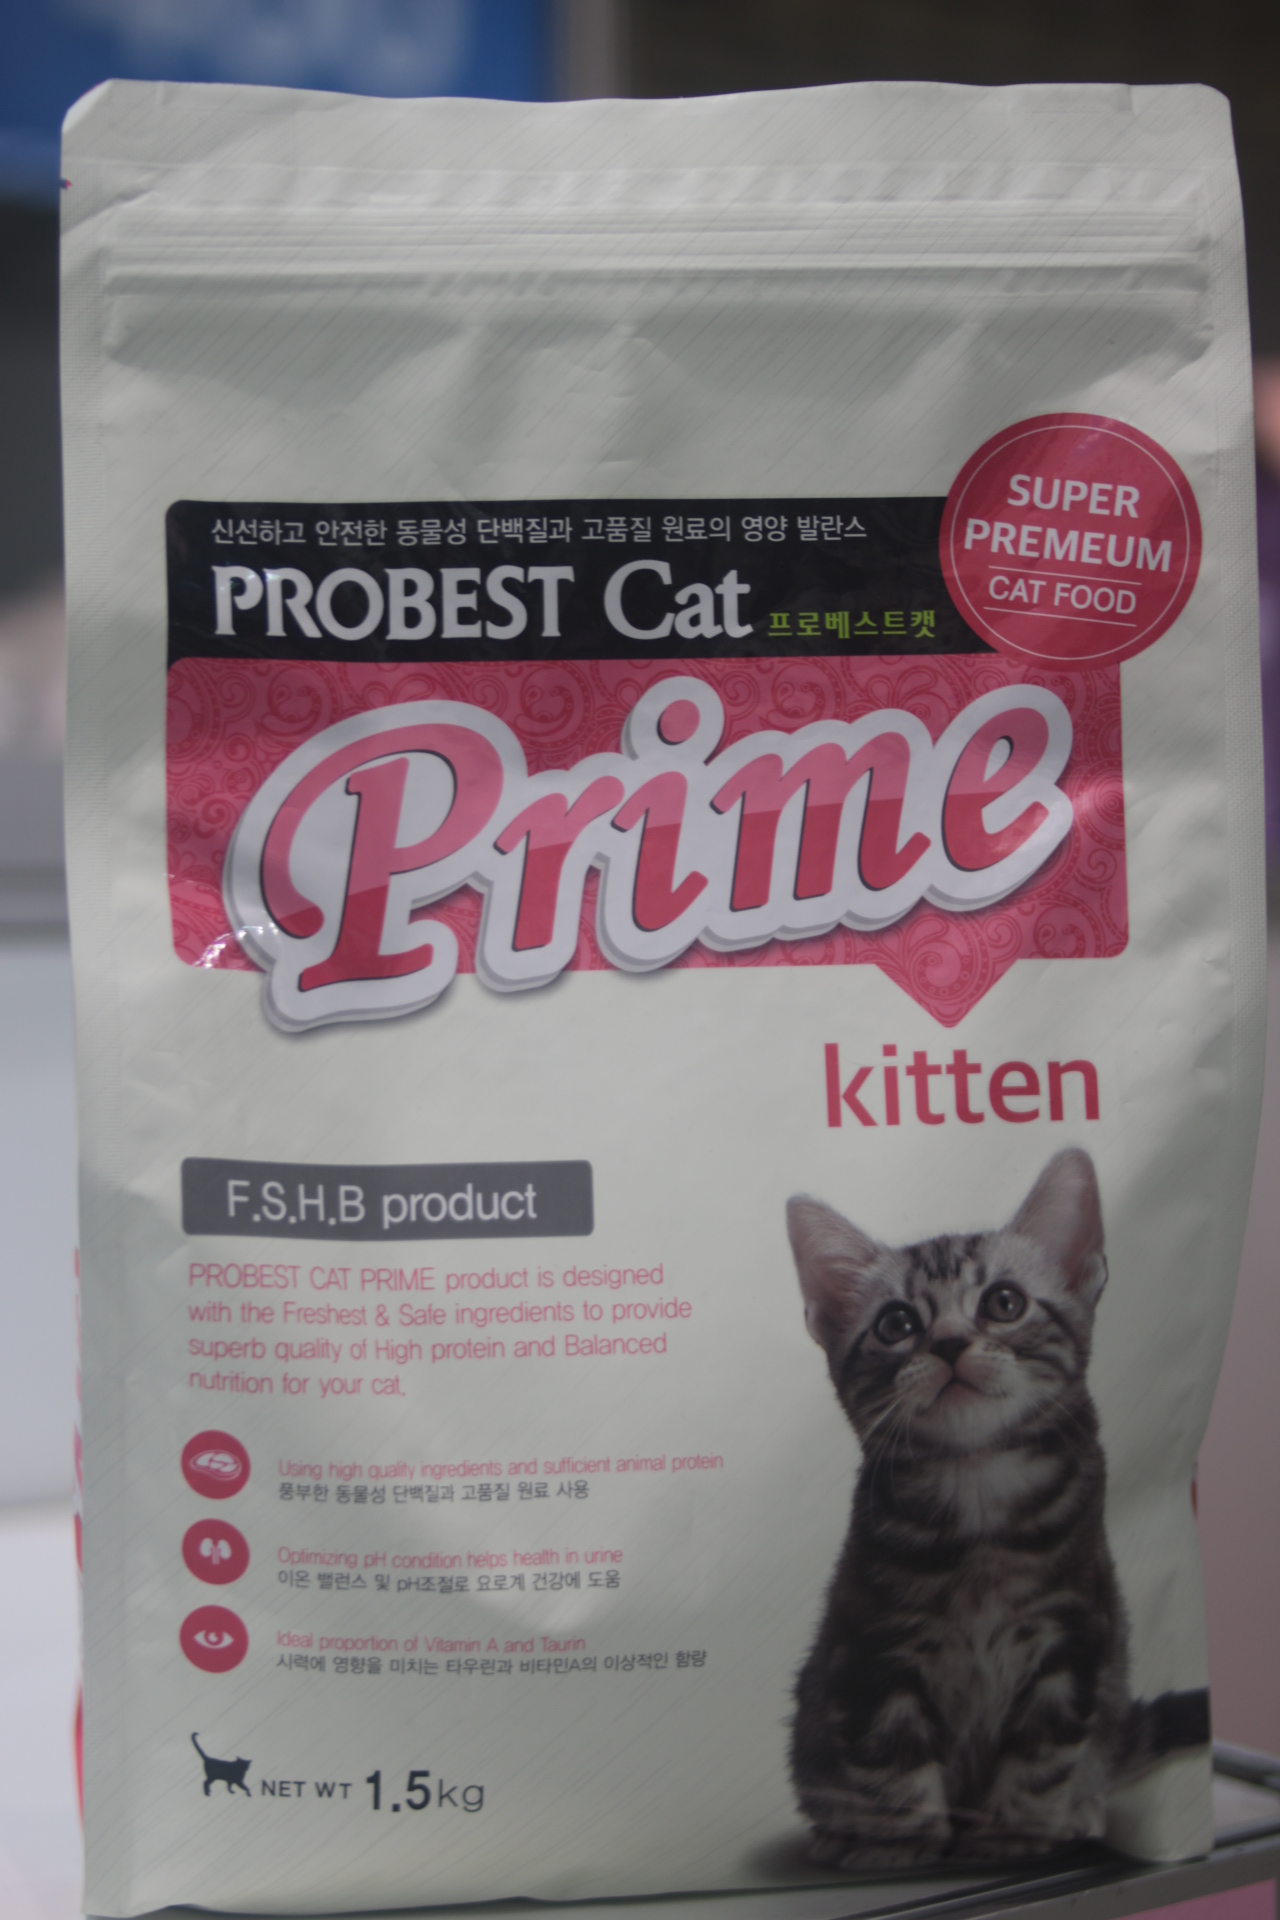 寶倍頂級幼貓配方
Probest Cat Prime Kitten